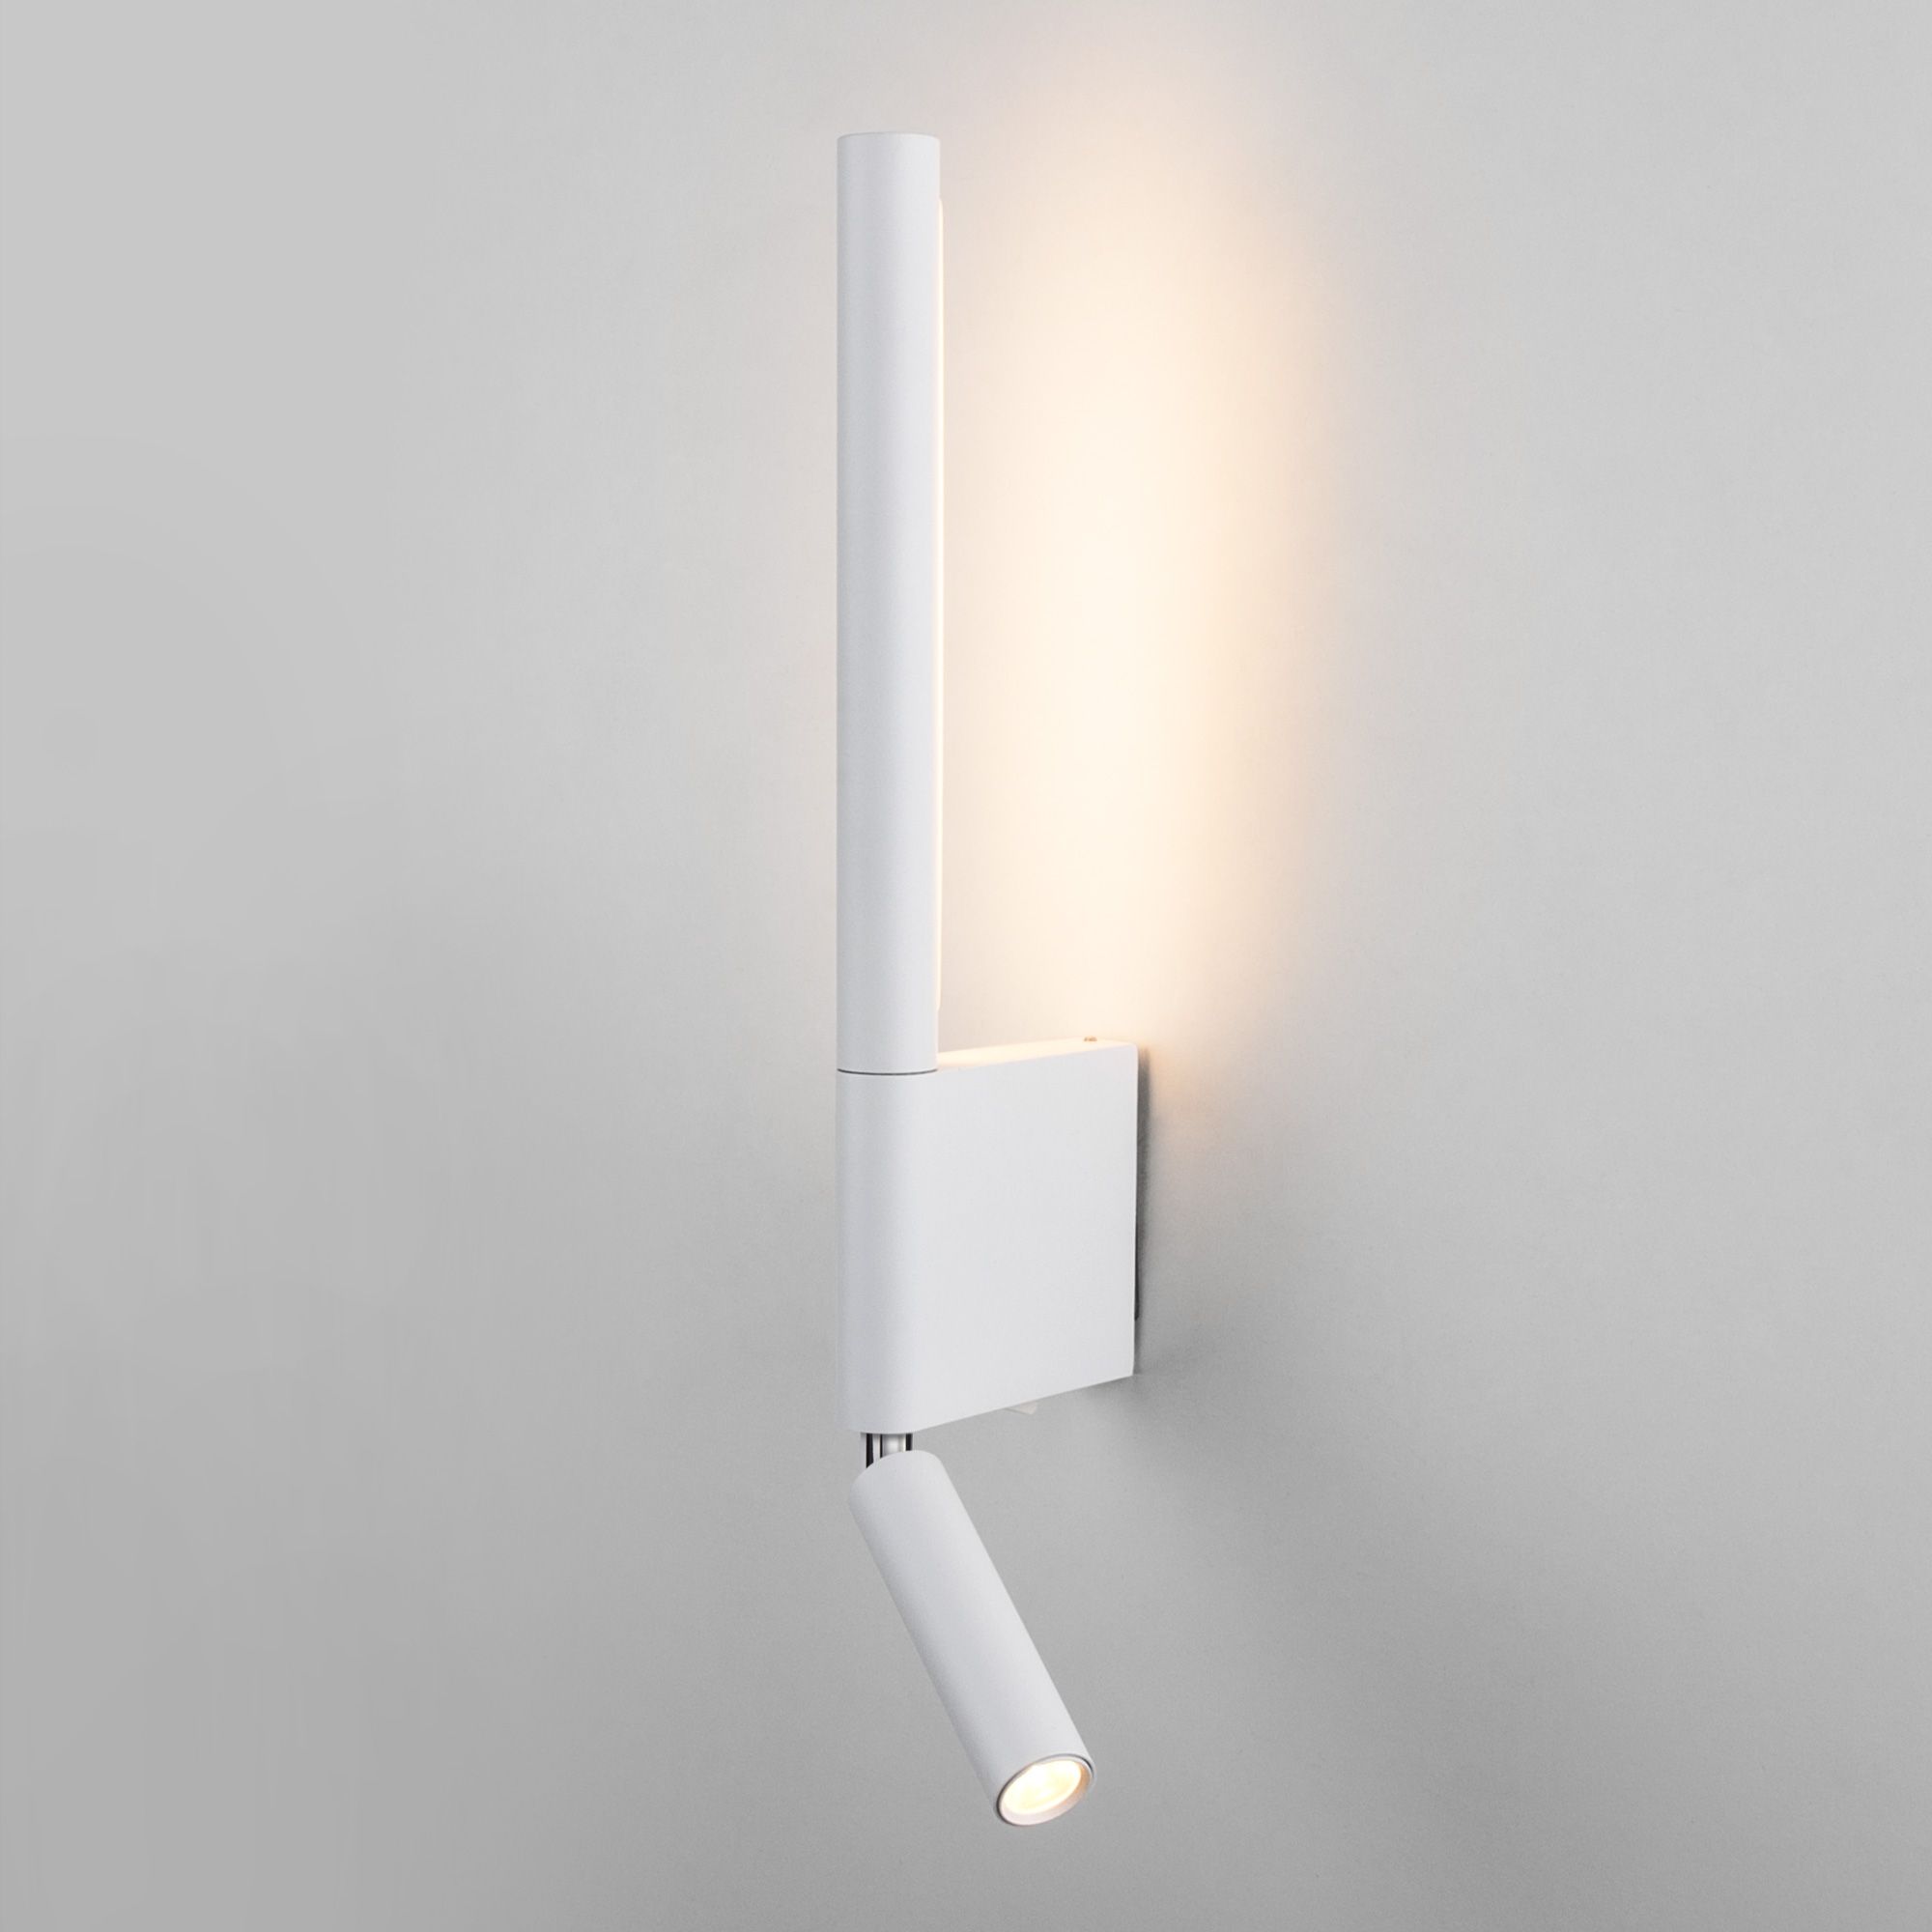 Настенный светодиодный светильник Sarca LED 40111/LED  белый Elektrostandard